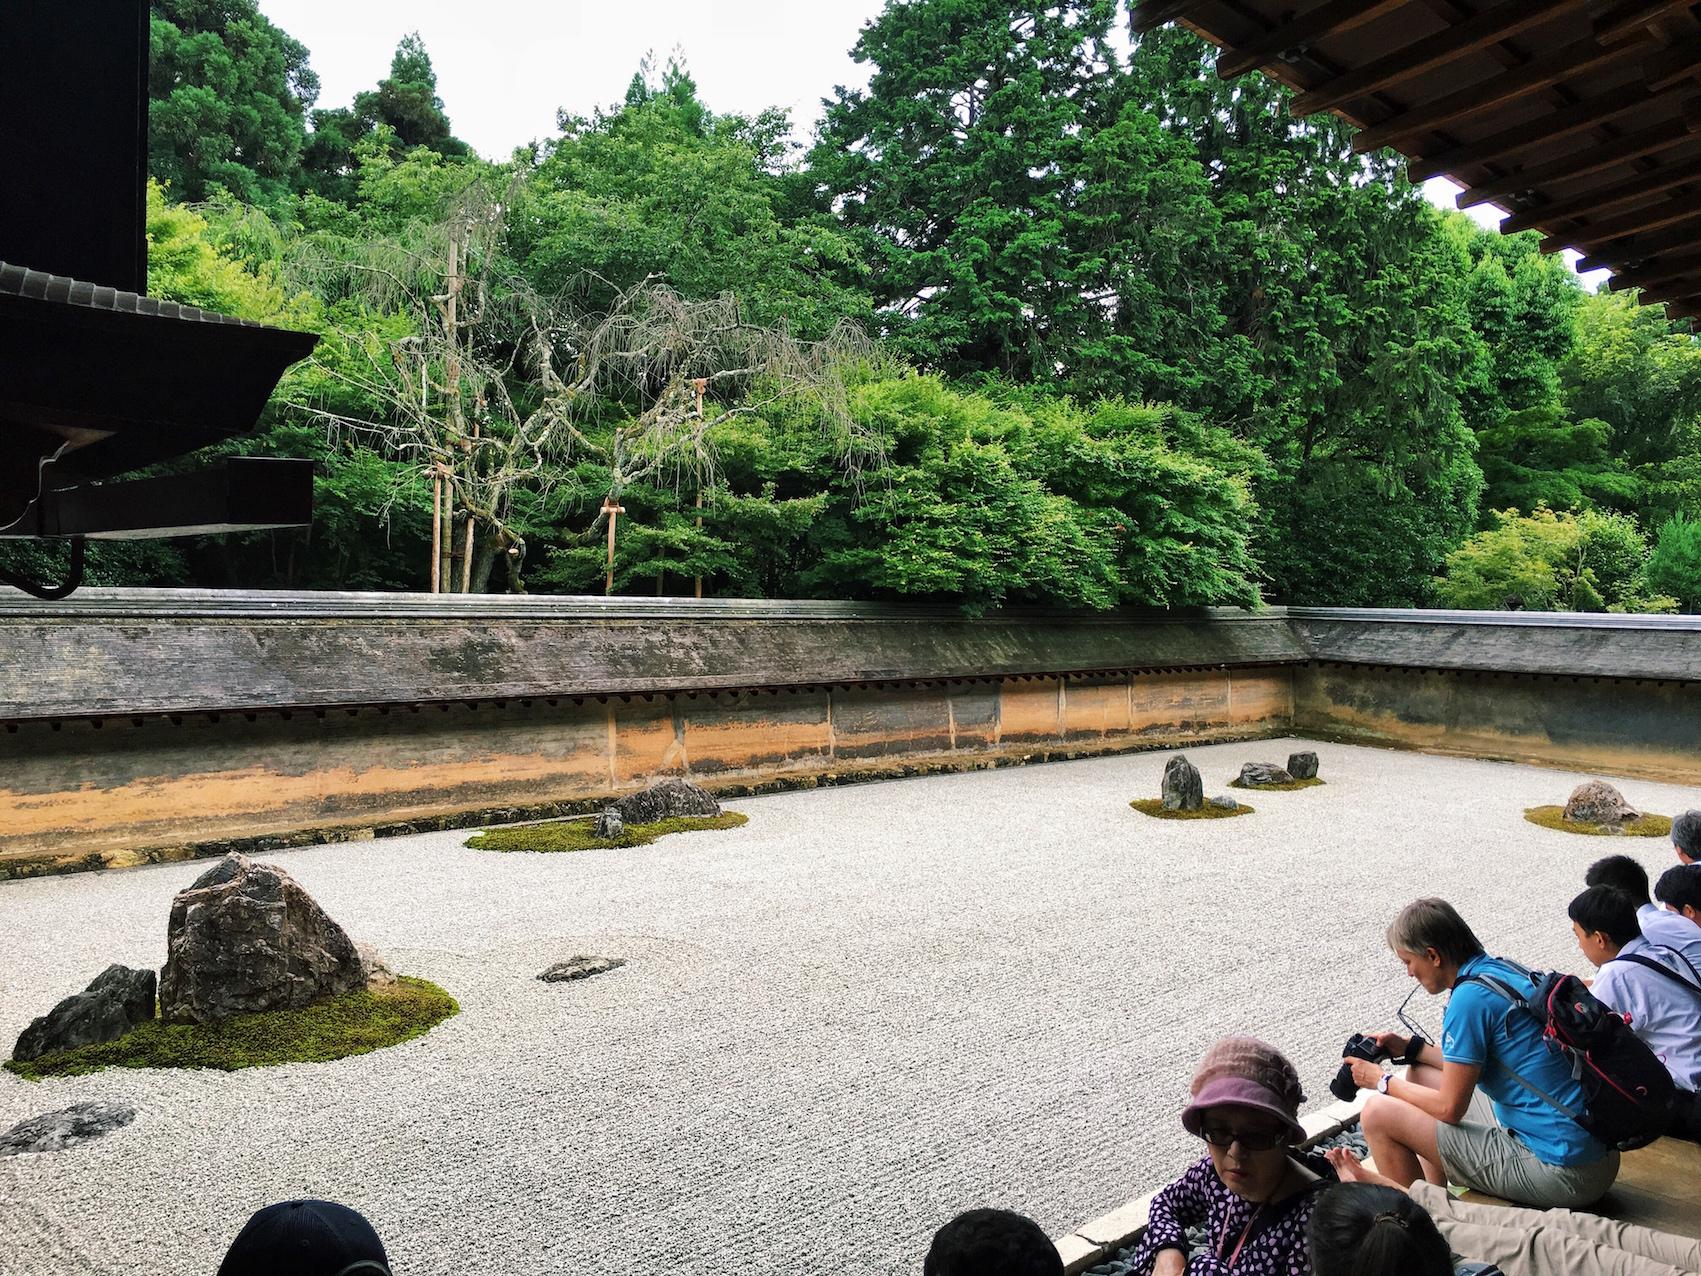 日本枯山水庭园赏析，“自然的巨作”大德寺大仙院书院庭园 - 建筑界